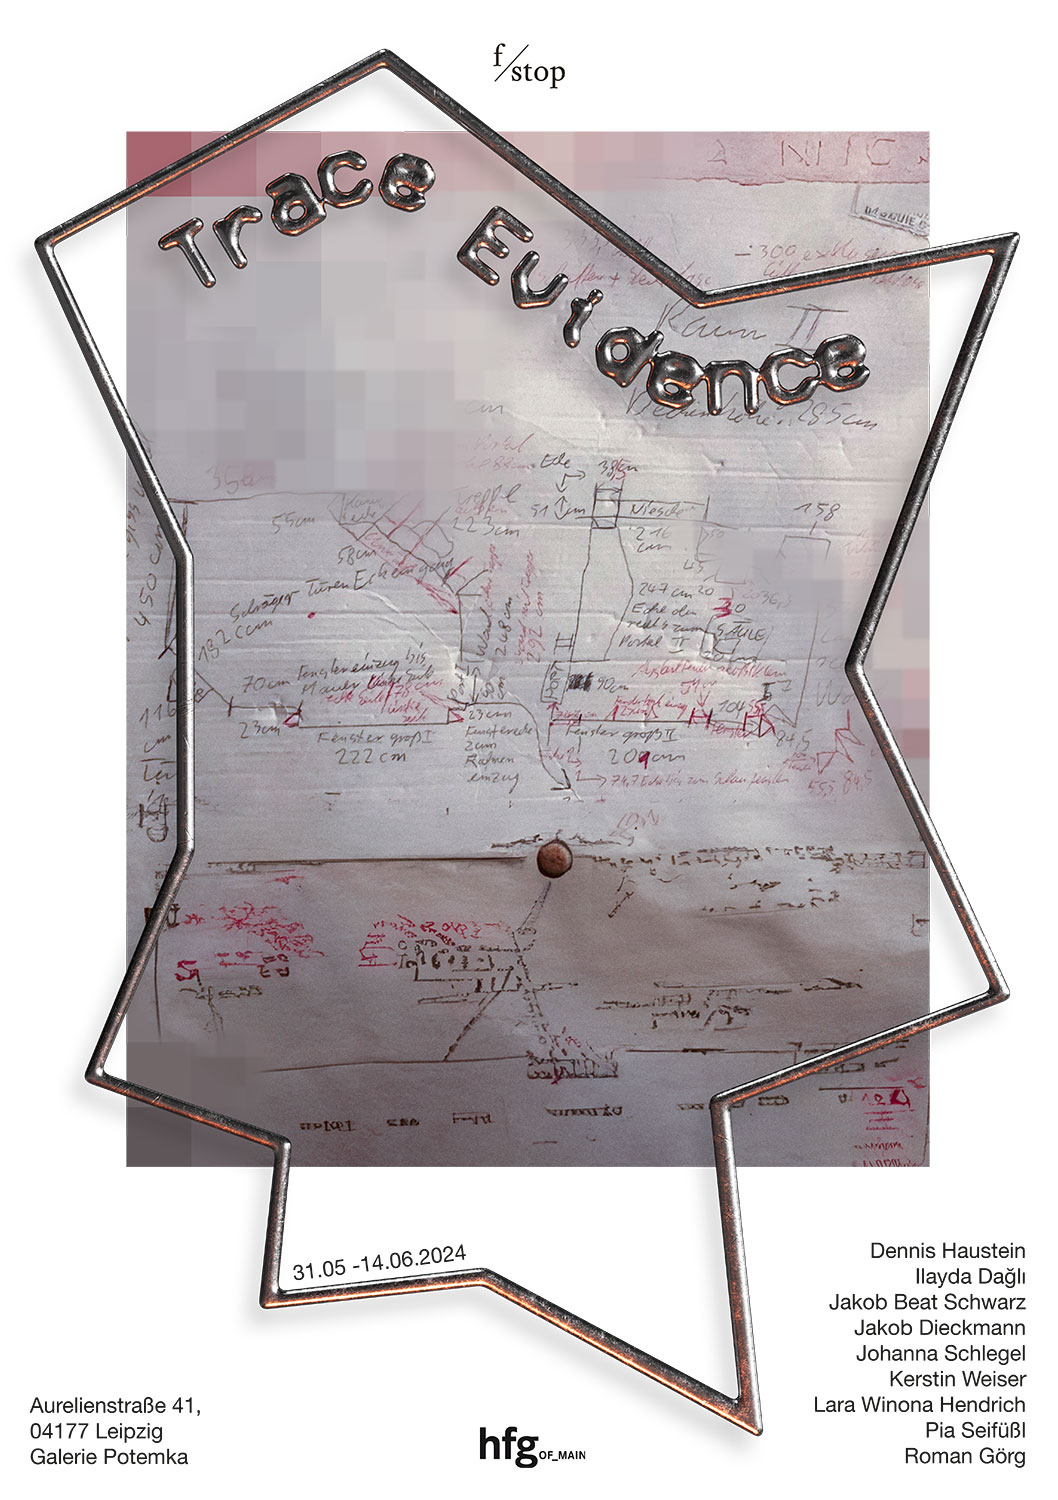 “Trace Evidence”, Gruppenausstellung von Fotografie Studierenden der HfG Offenbach, im Rahmen des Leipziger Fotofestivals in der Galeria Potemka, 31.05 -14.06.2024